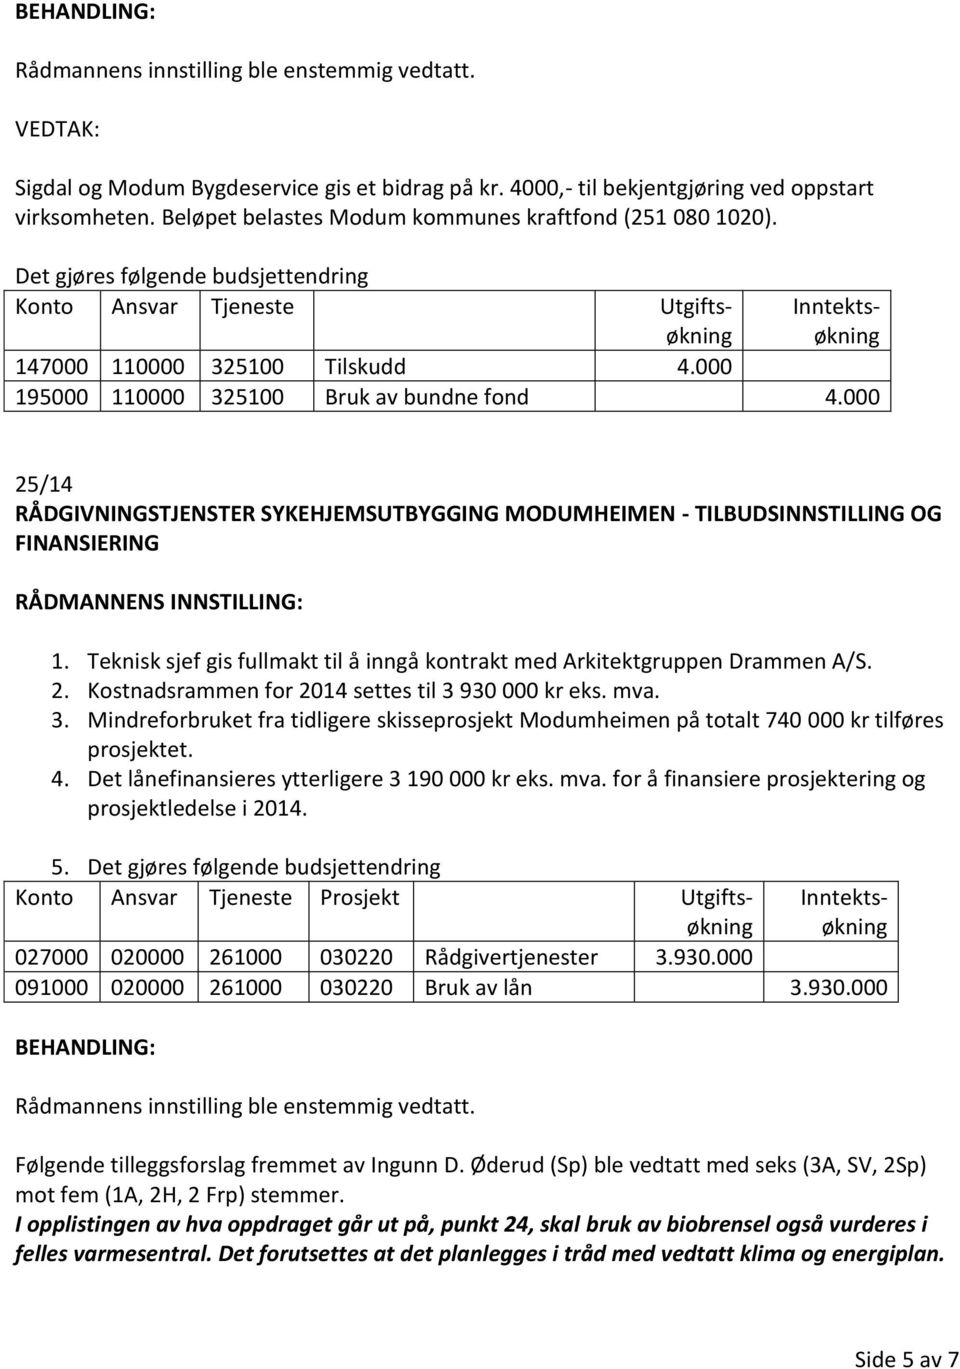 Teknisk sjef gis fullmakt til å inngå kontrakt med Arkitektgruppen Drammen A/S. 2. Kostnadsrammen for 2014 settes til 3 